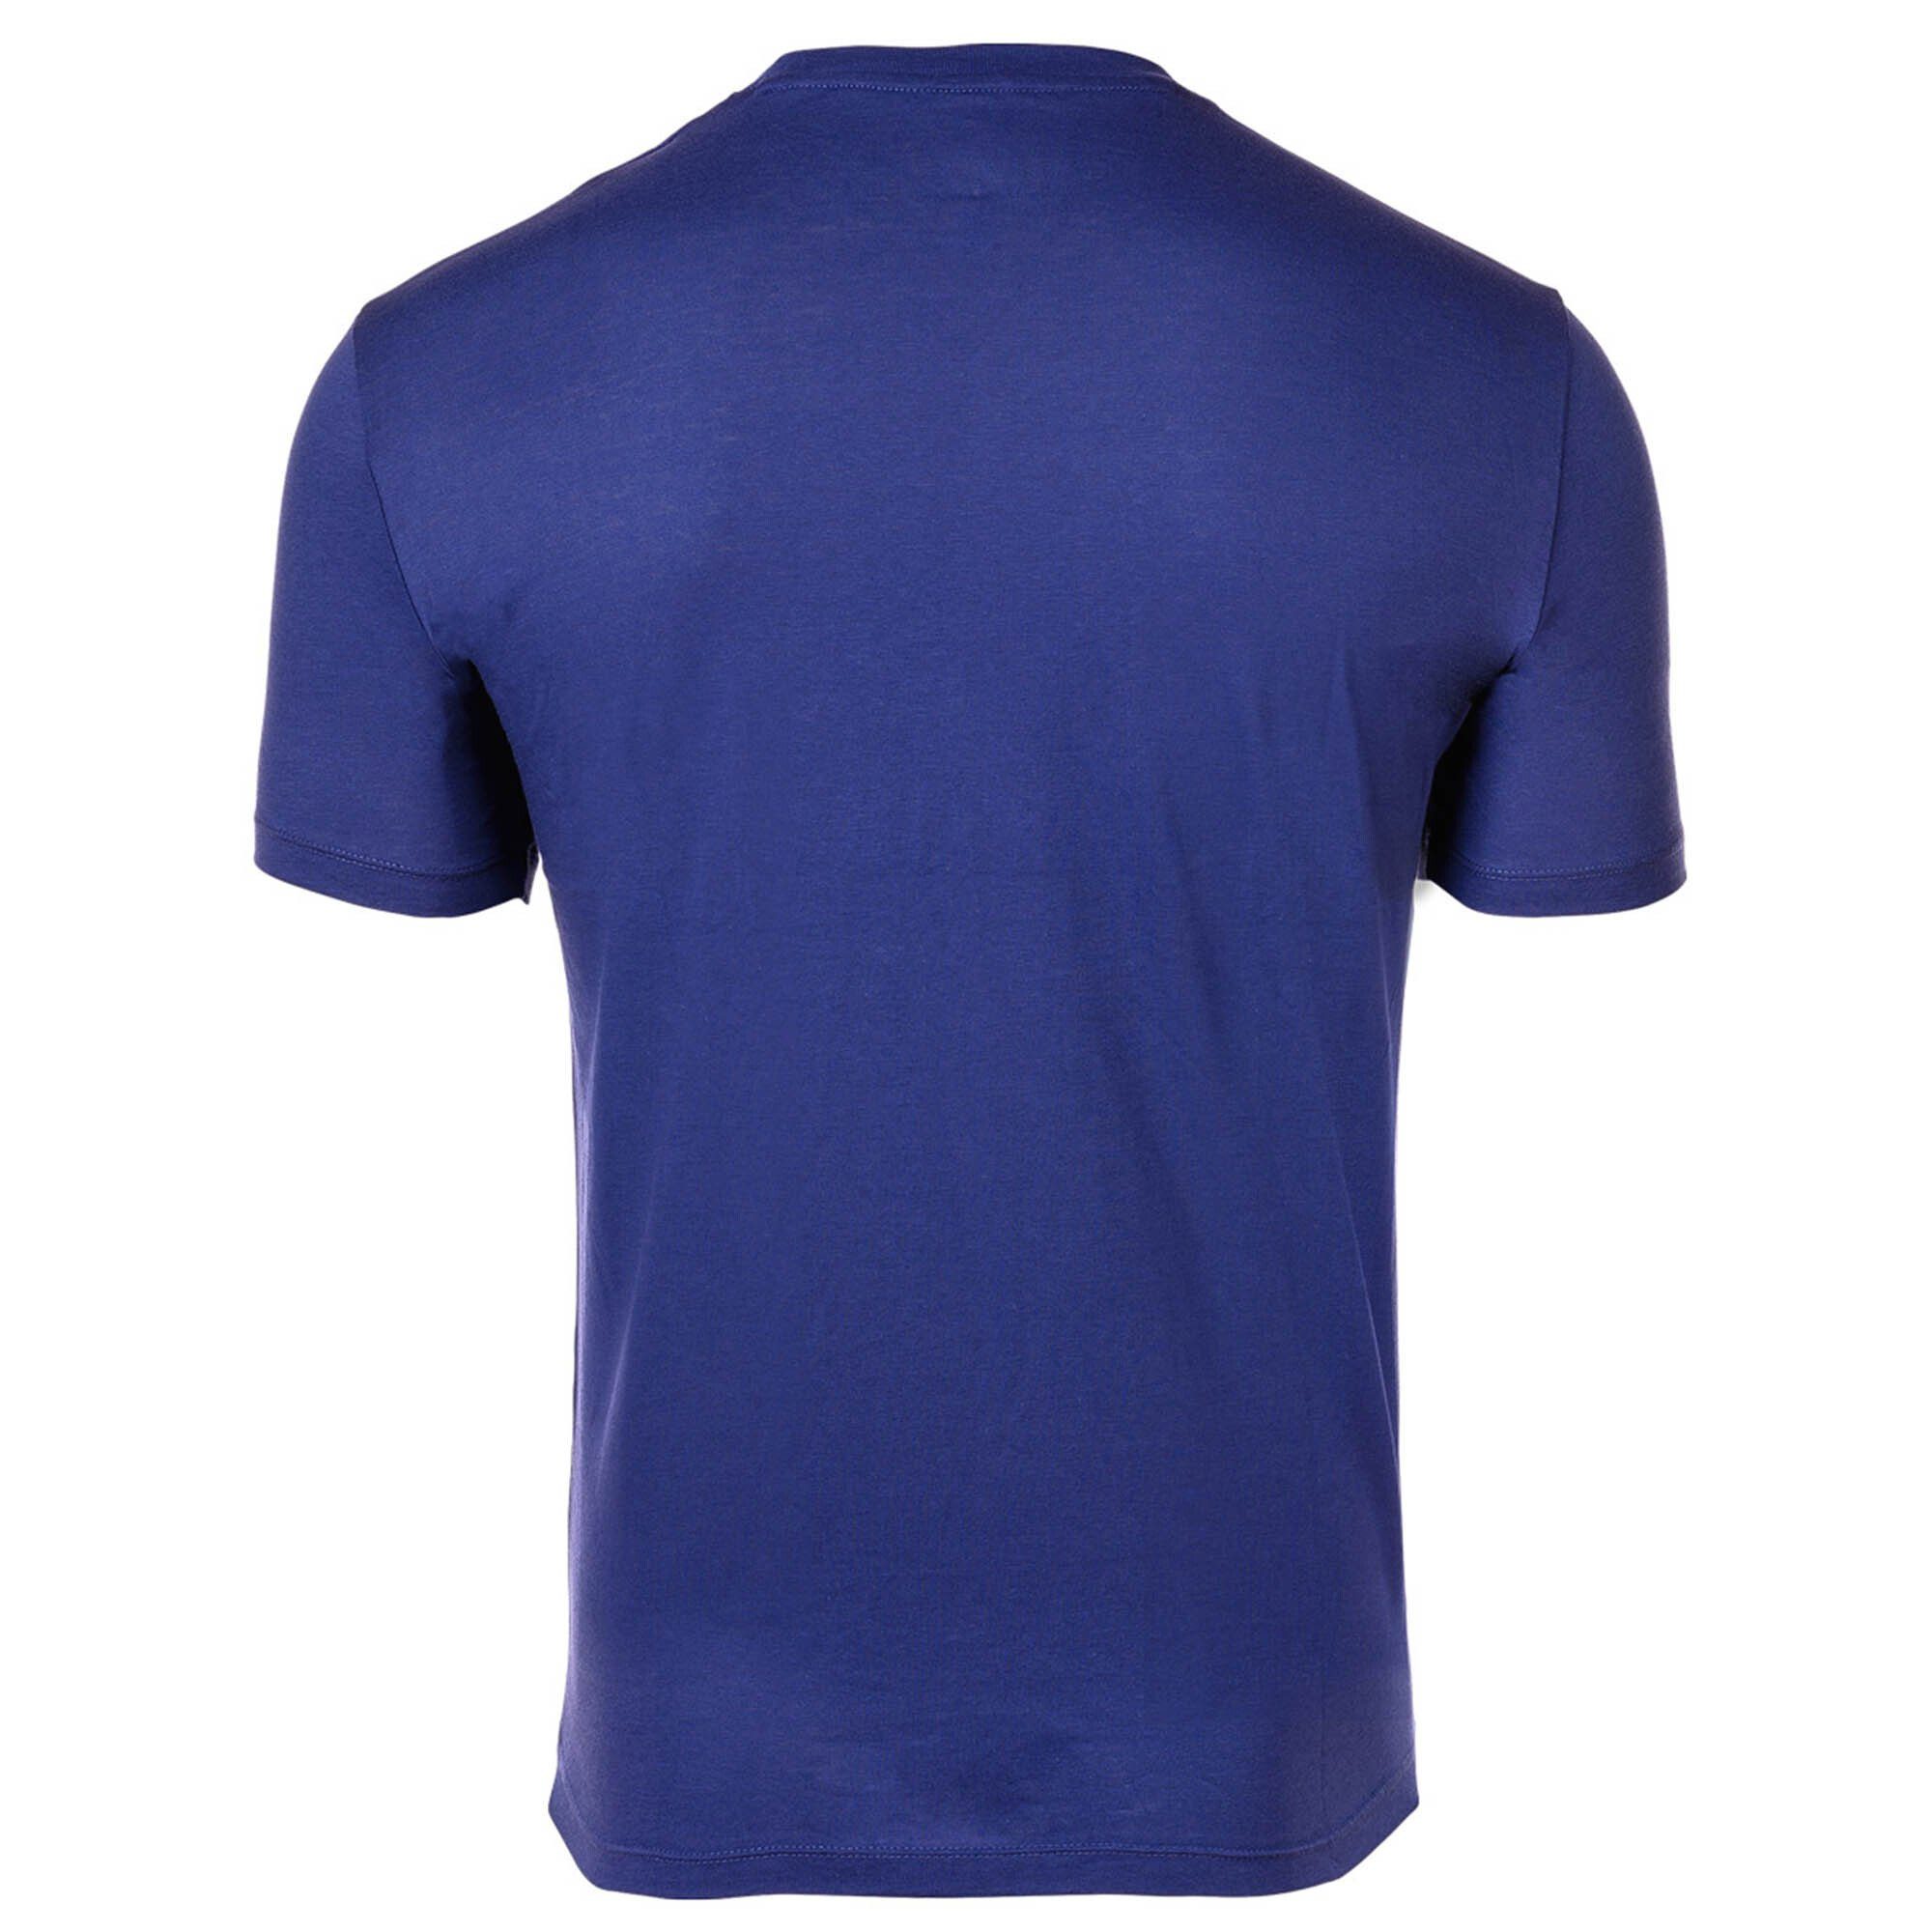 Cotton Schriftzug, T-Shirt - T-Shirt EXCHANGE Rundhals, ARMANI Blau Ultramarine) Herren (New